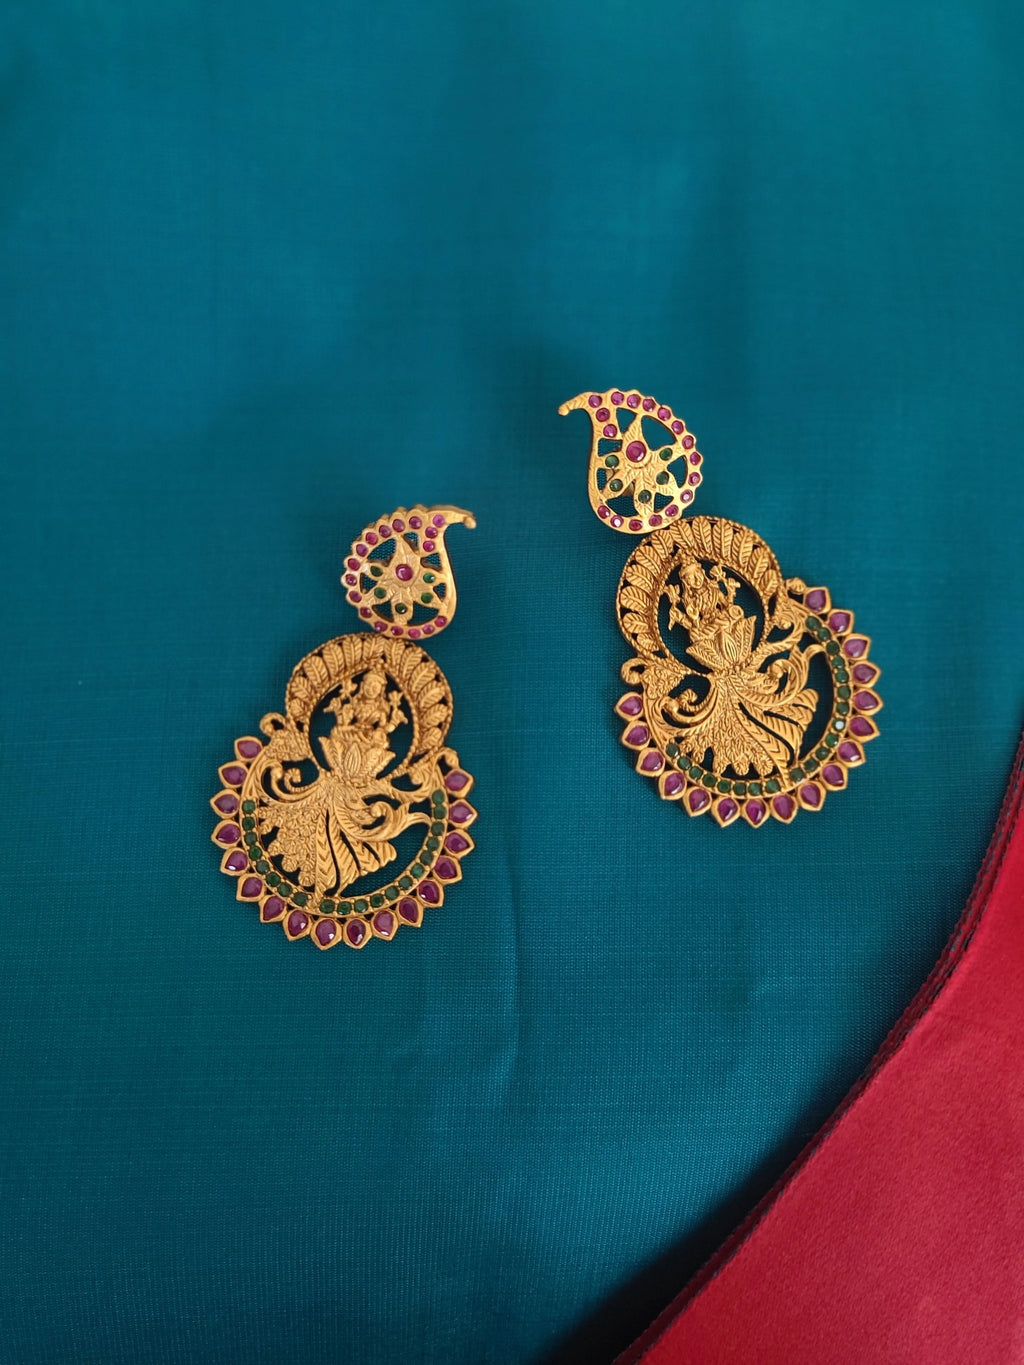 Narmada earrings